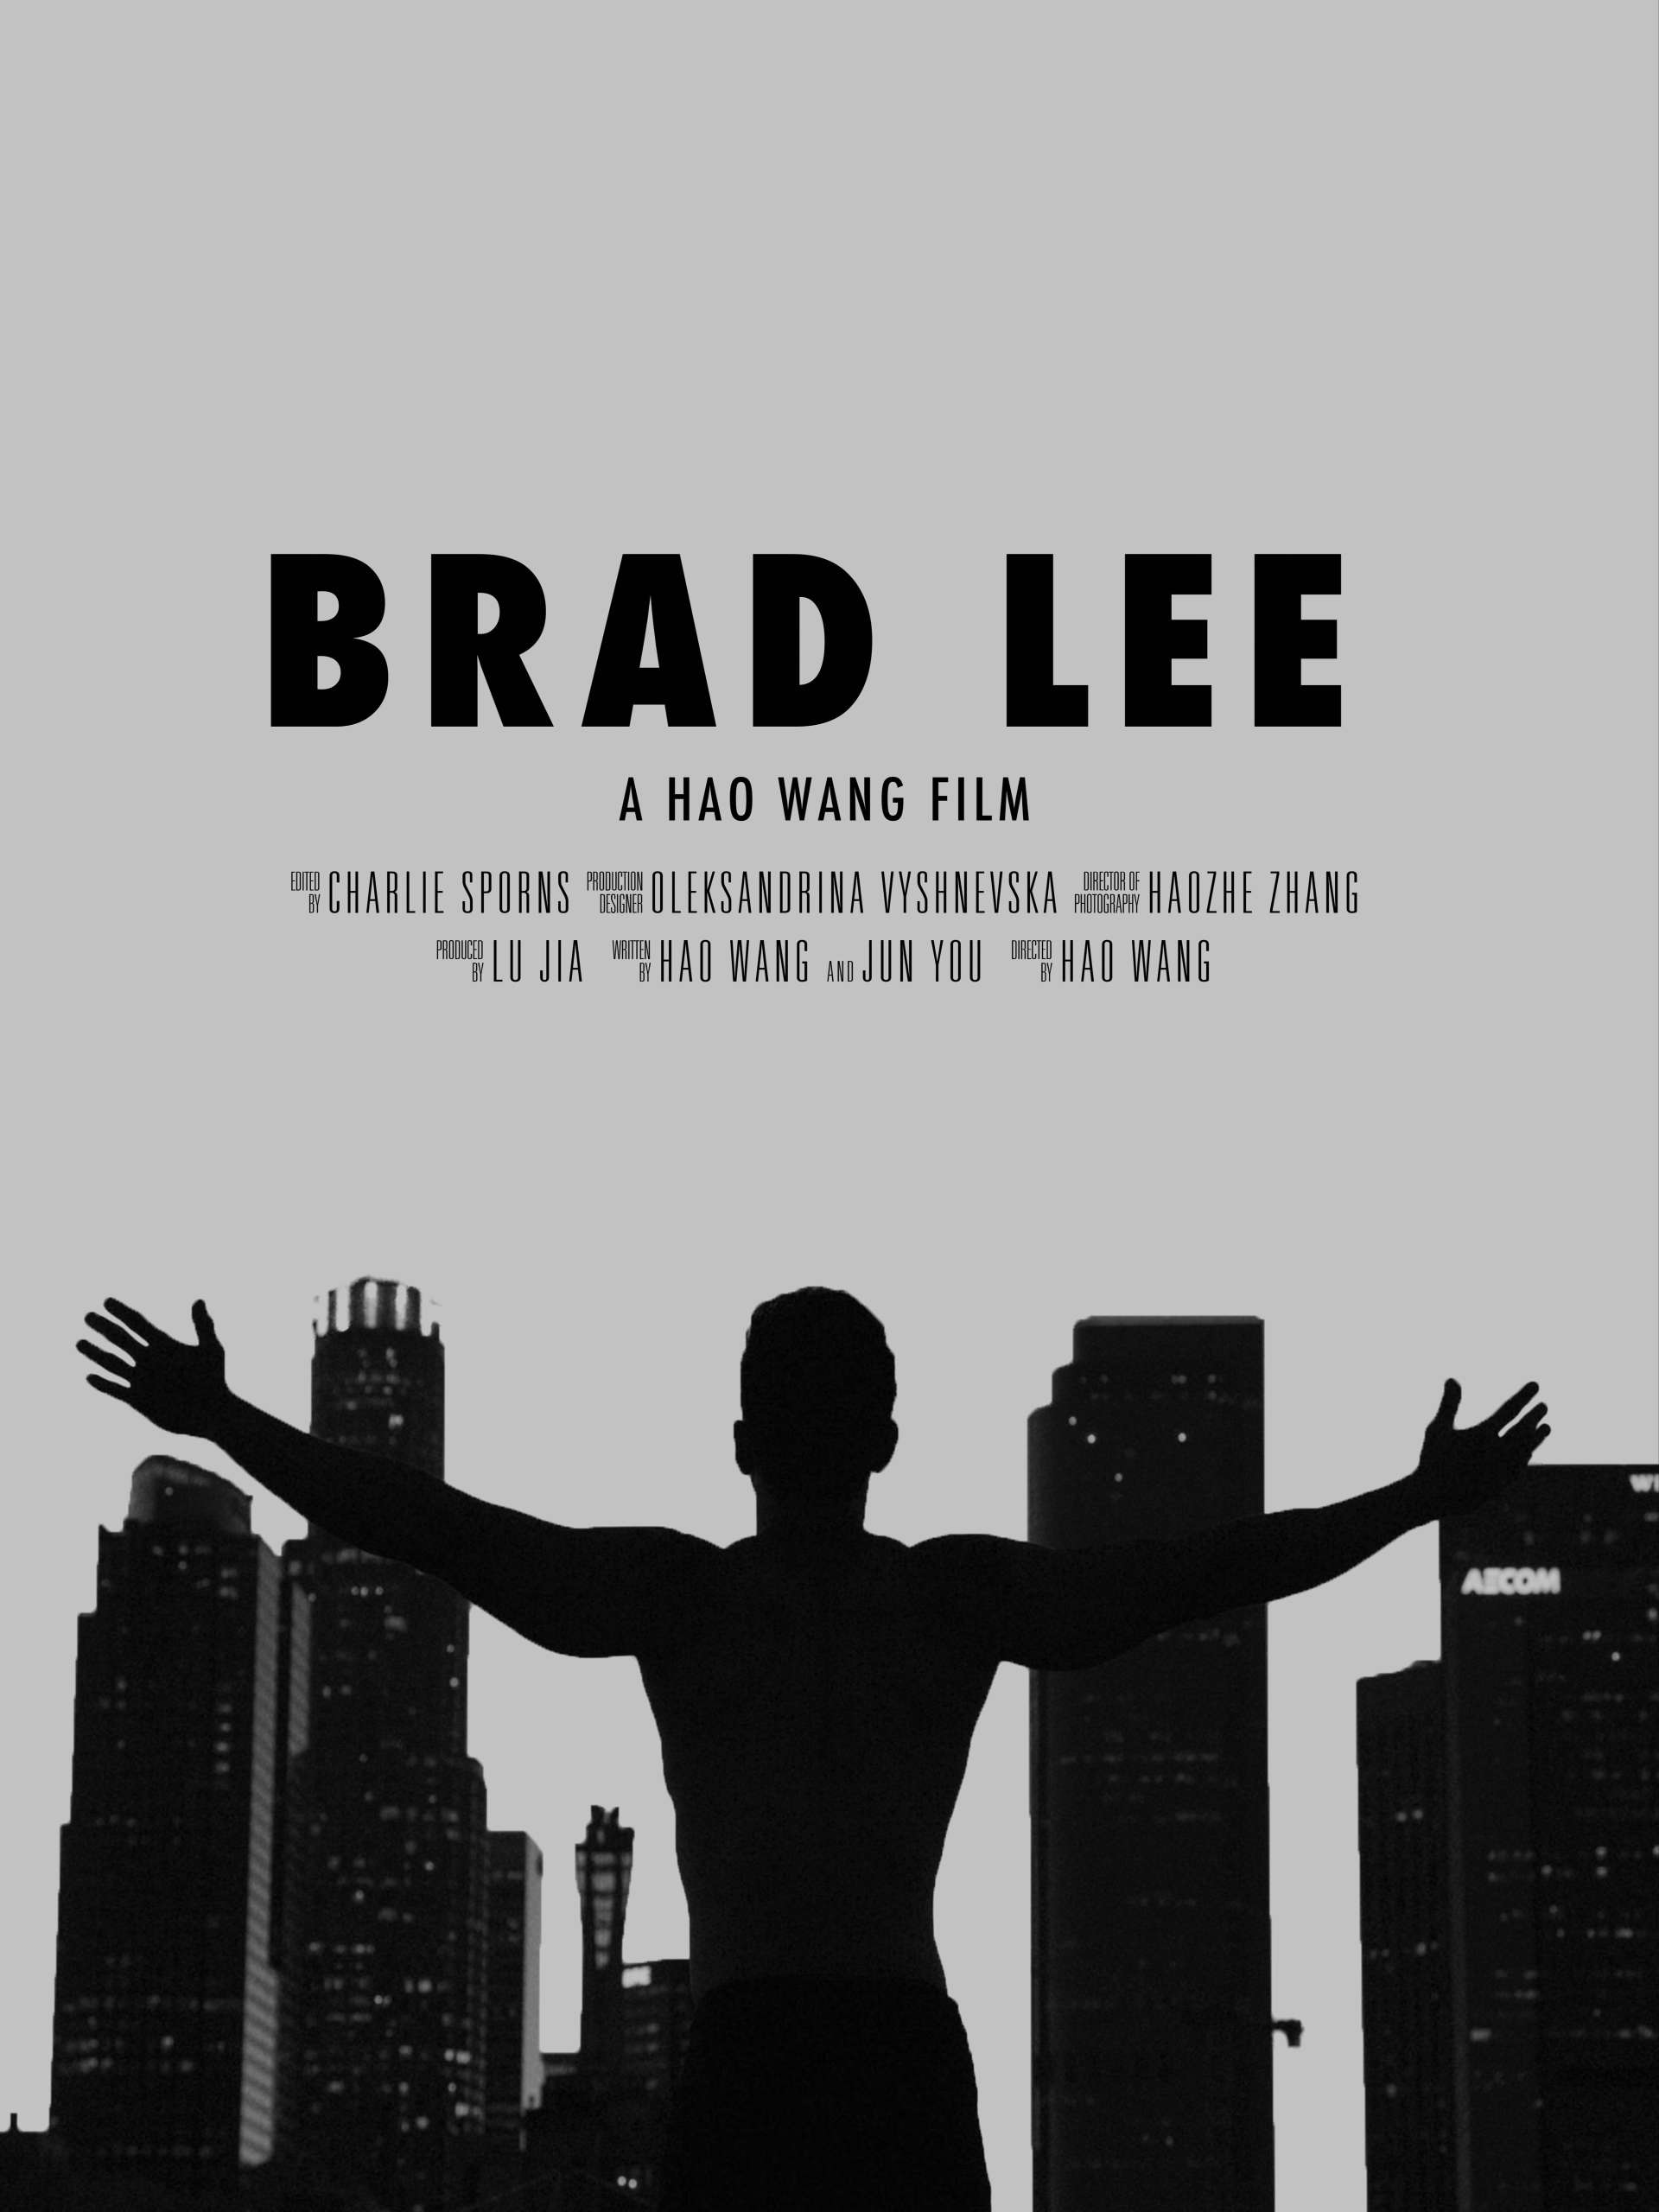 「获奖短片」《BRAD LEE》中英双语字幕版